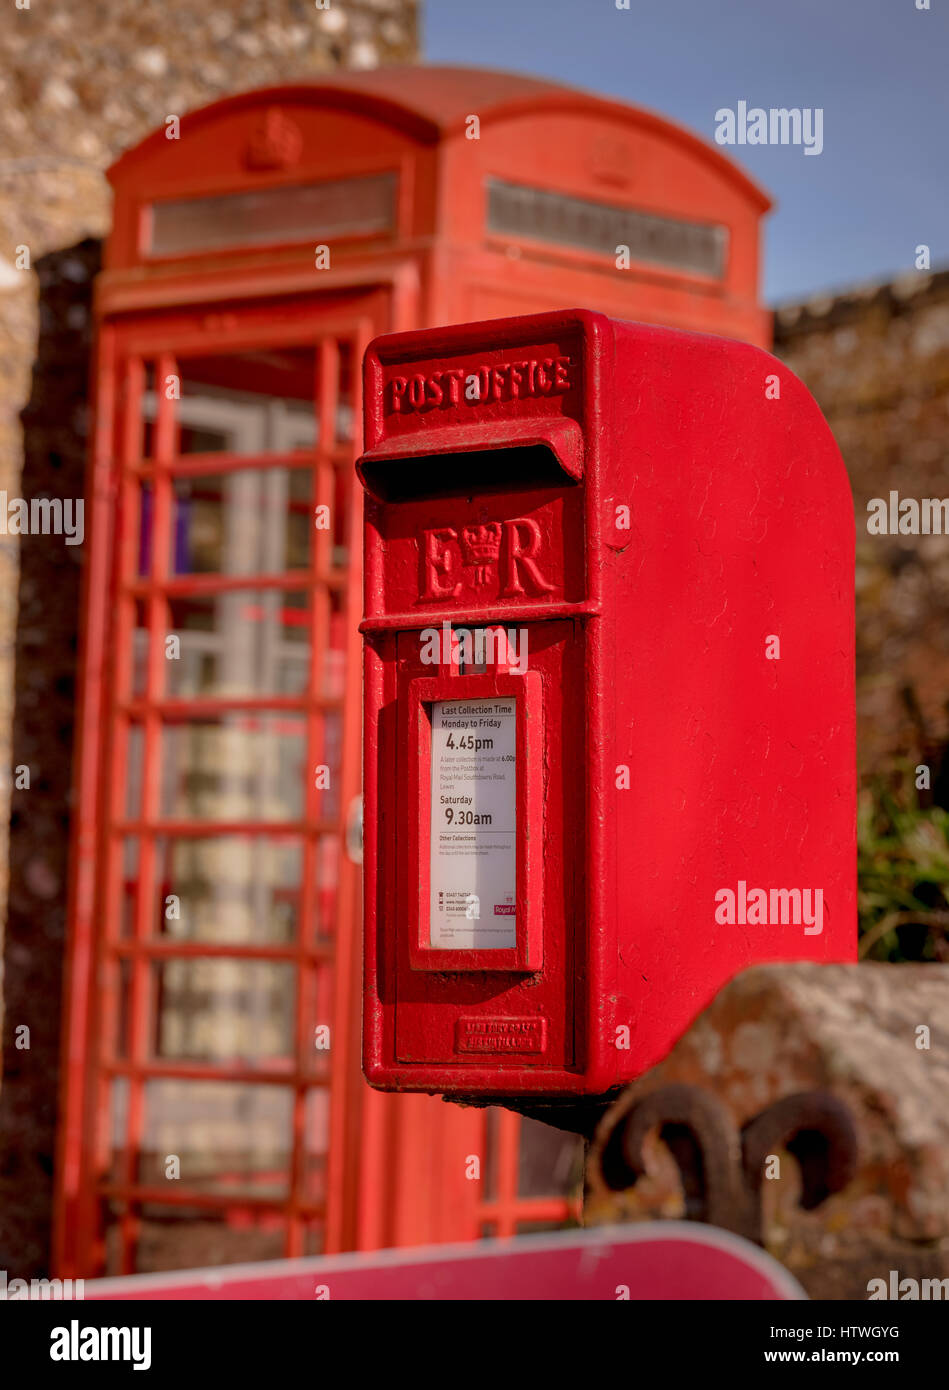 Une boîte aux lettres rouge et a disparu à l'extérieur du village de téléphone magasins dans le village de Firle dans l'East Sussex près de Lewes. Banque D'Images